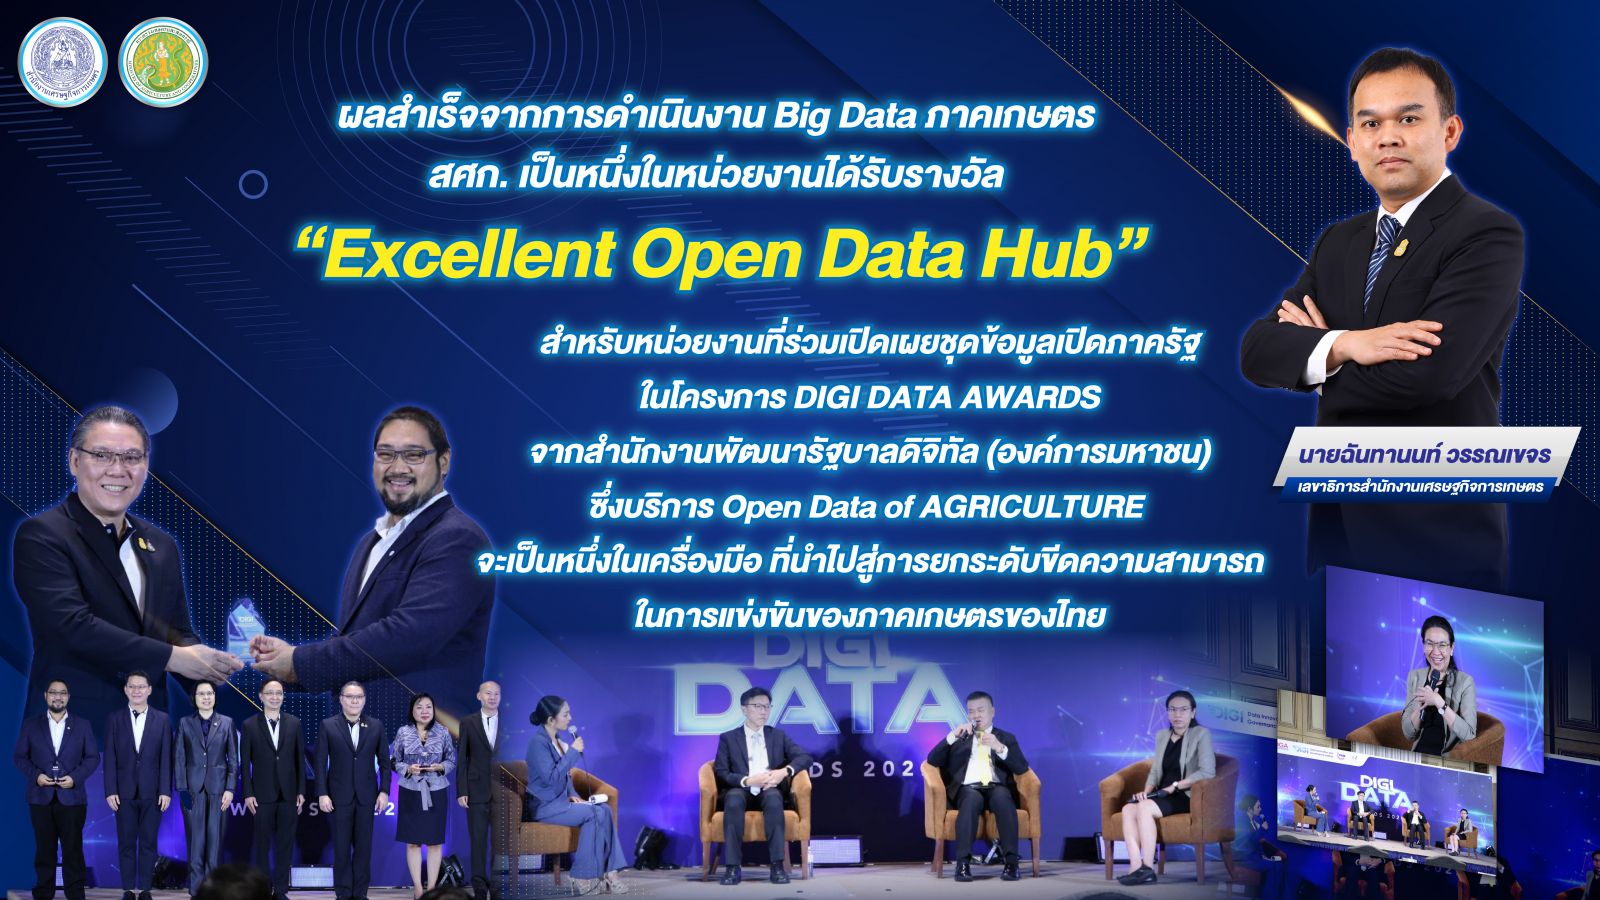 สศก. ขึ้นรับรางวัล ‘Excellent Open Data Hub’ หน่วยงานเปิดเผยชุดข้อมูลเปิดภาครัฐ โครงการ DIGI DATA AWARDS